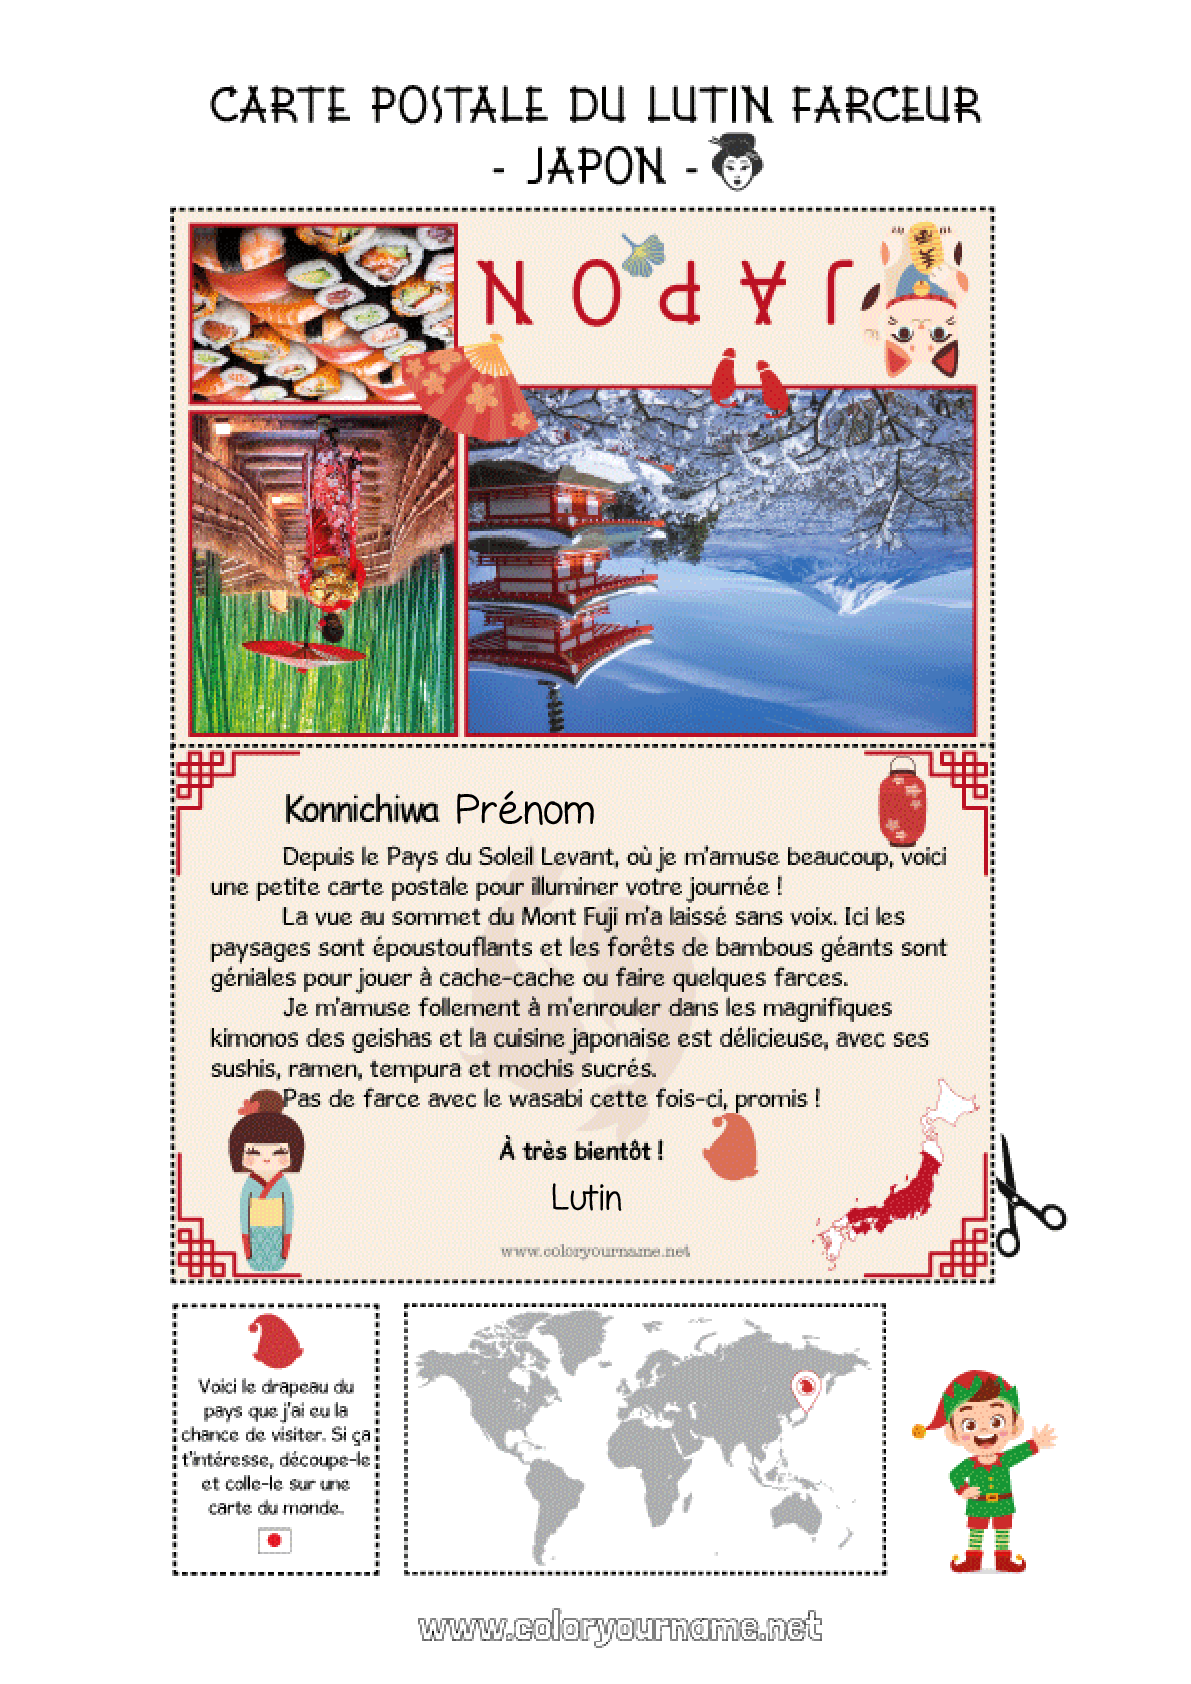 Les porte-bonheur japonais - Carte postale du Japon